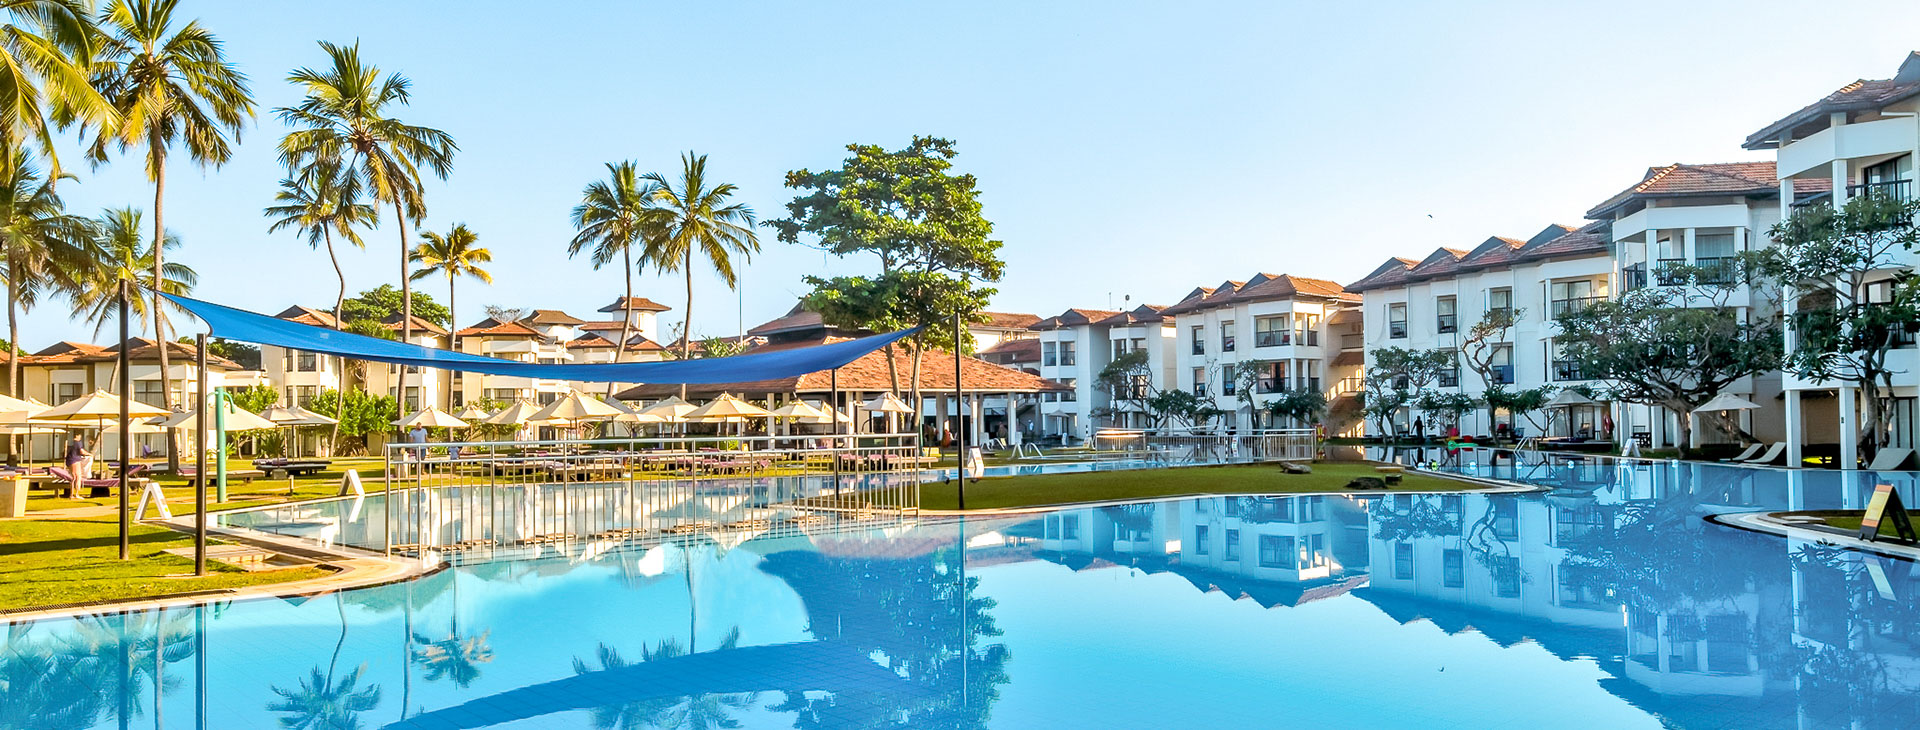 Club Hotel Dolphin - dovolená na Srí Lance Obrázok0